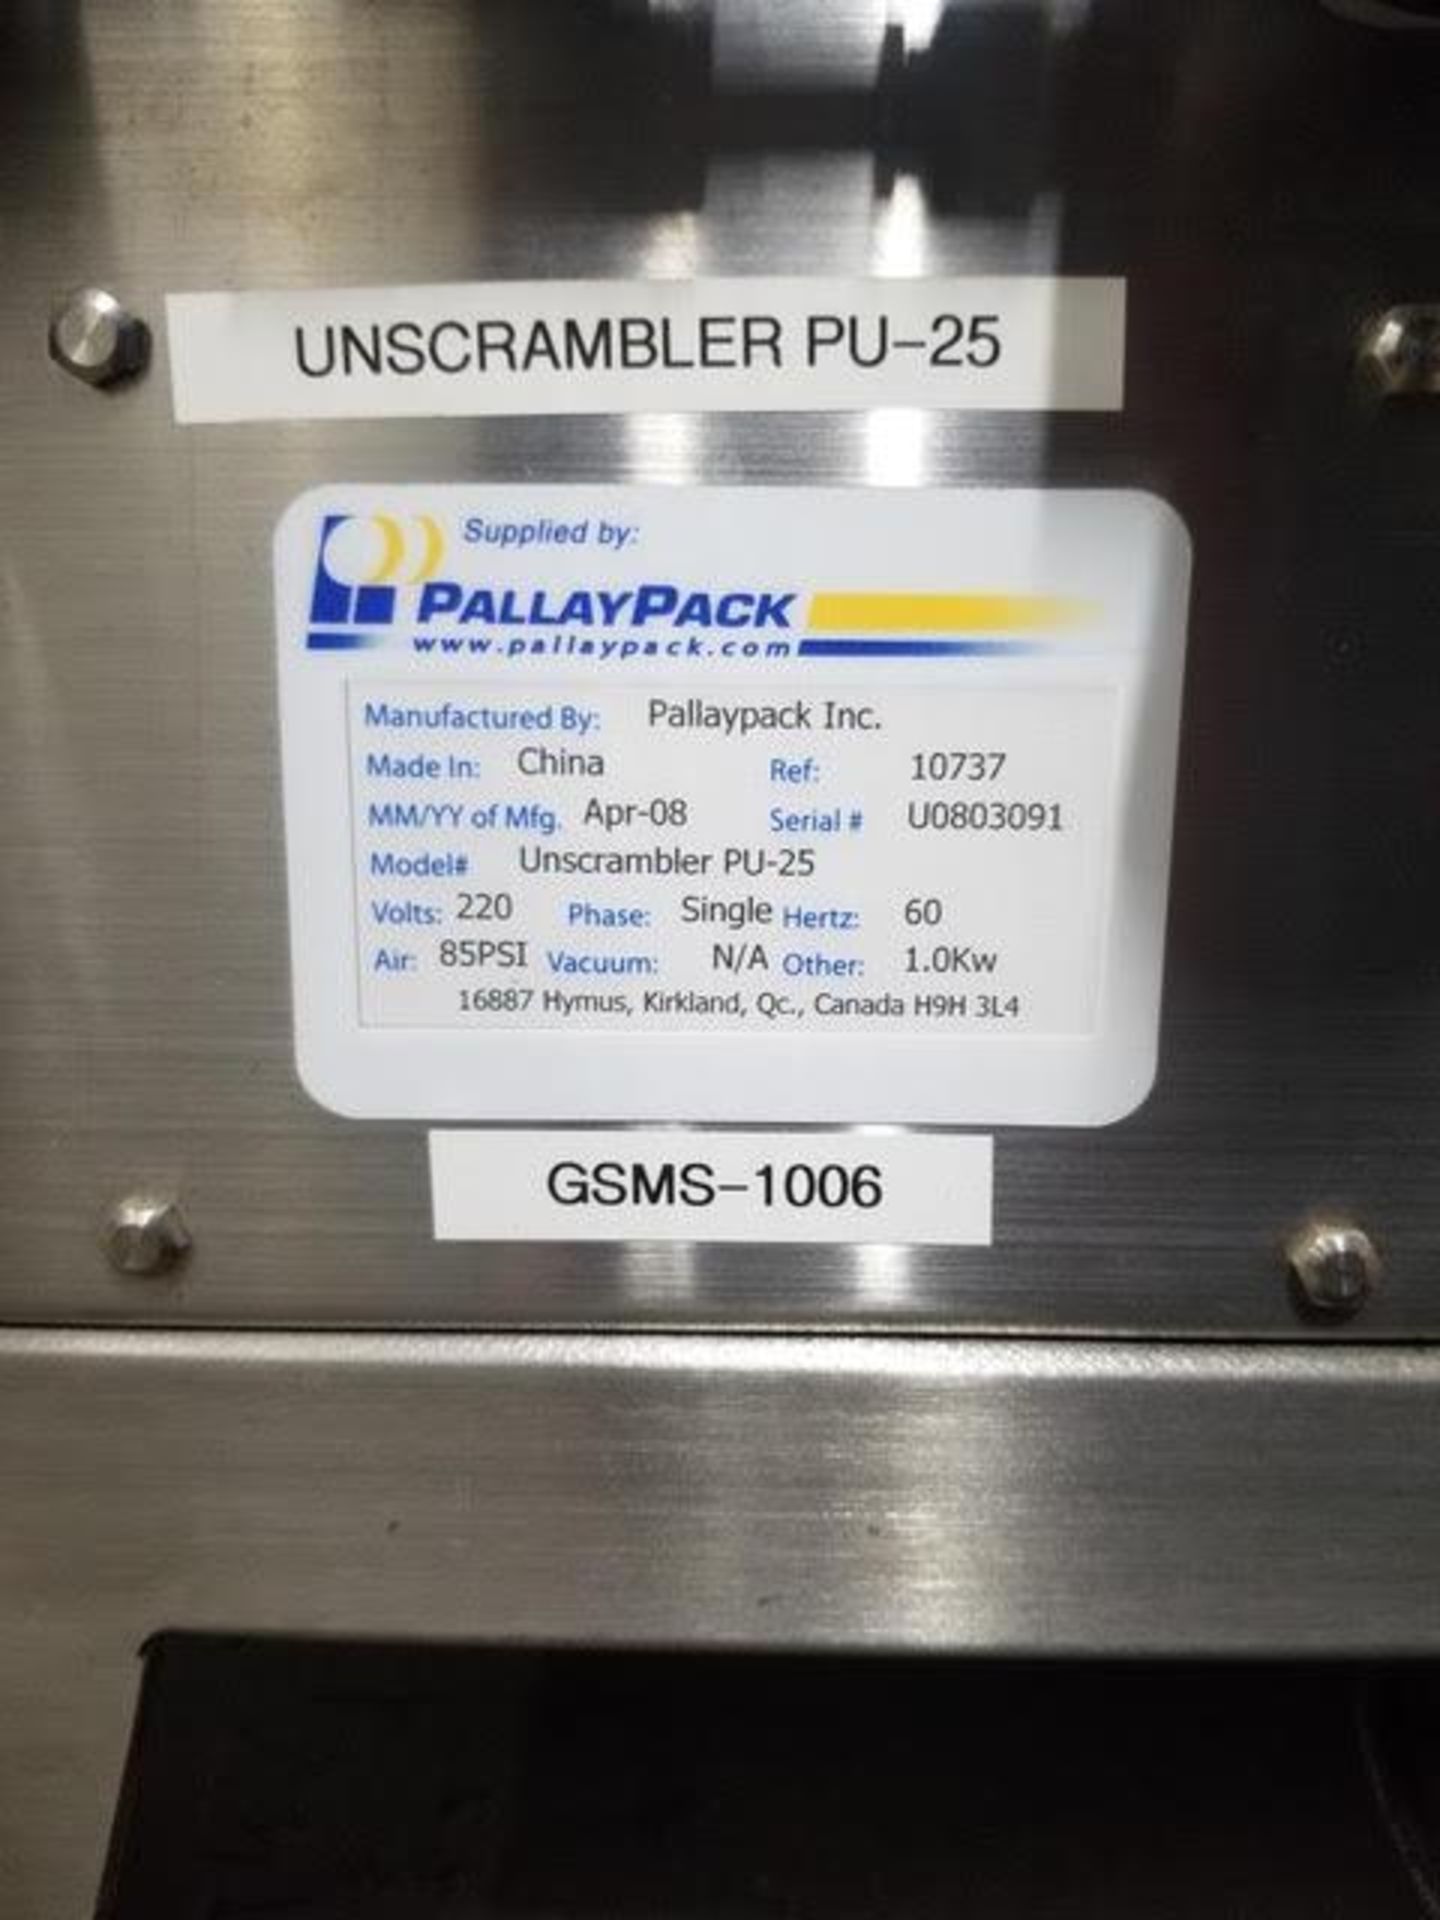 Pallay Pack bottle unscrambler PU-25 - Image 7 of 7